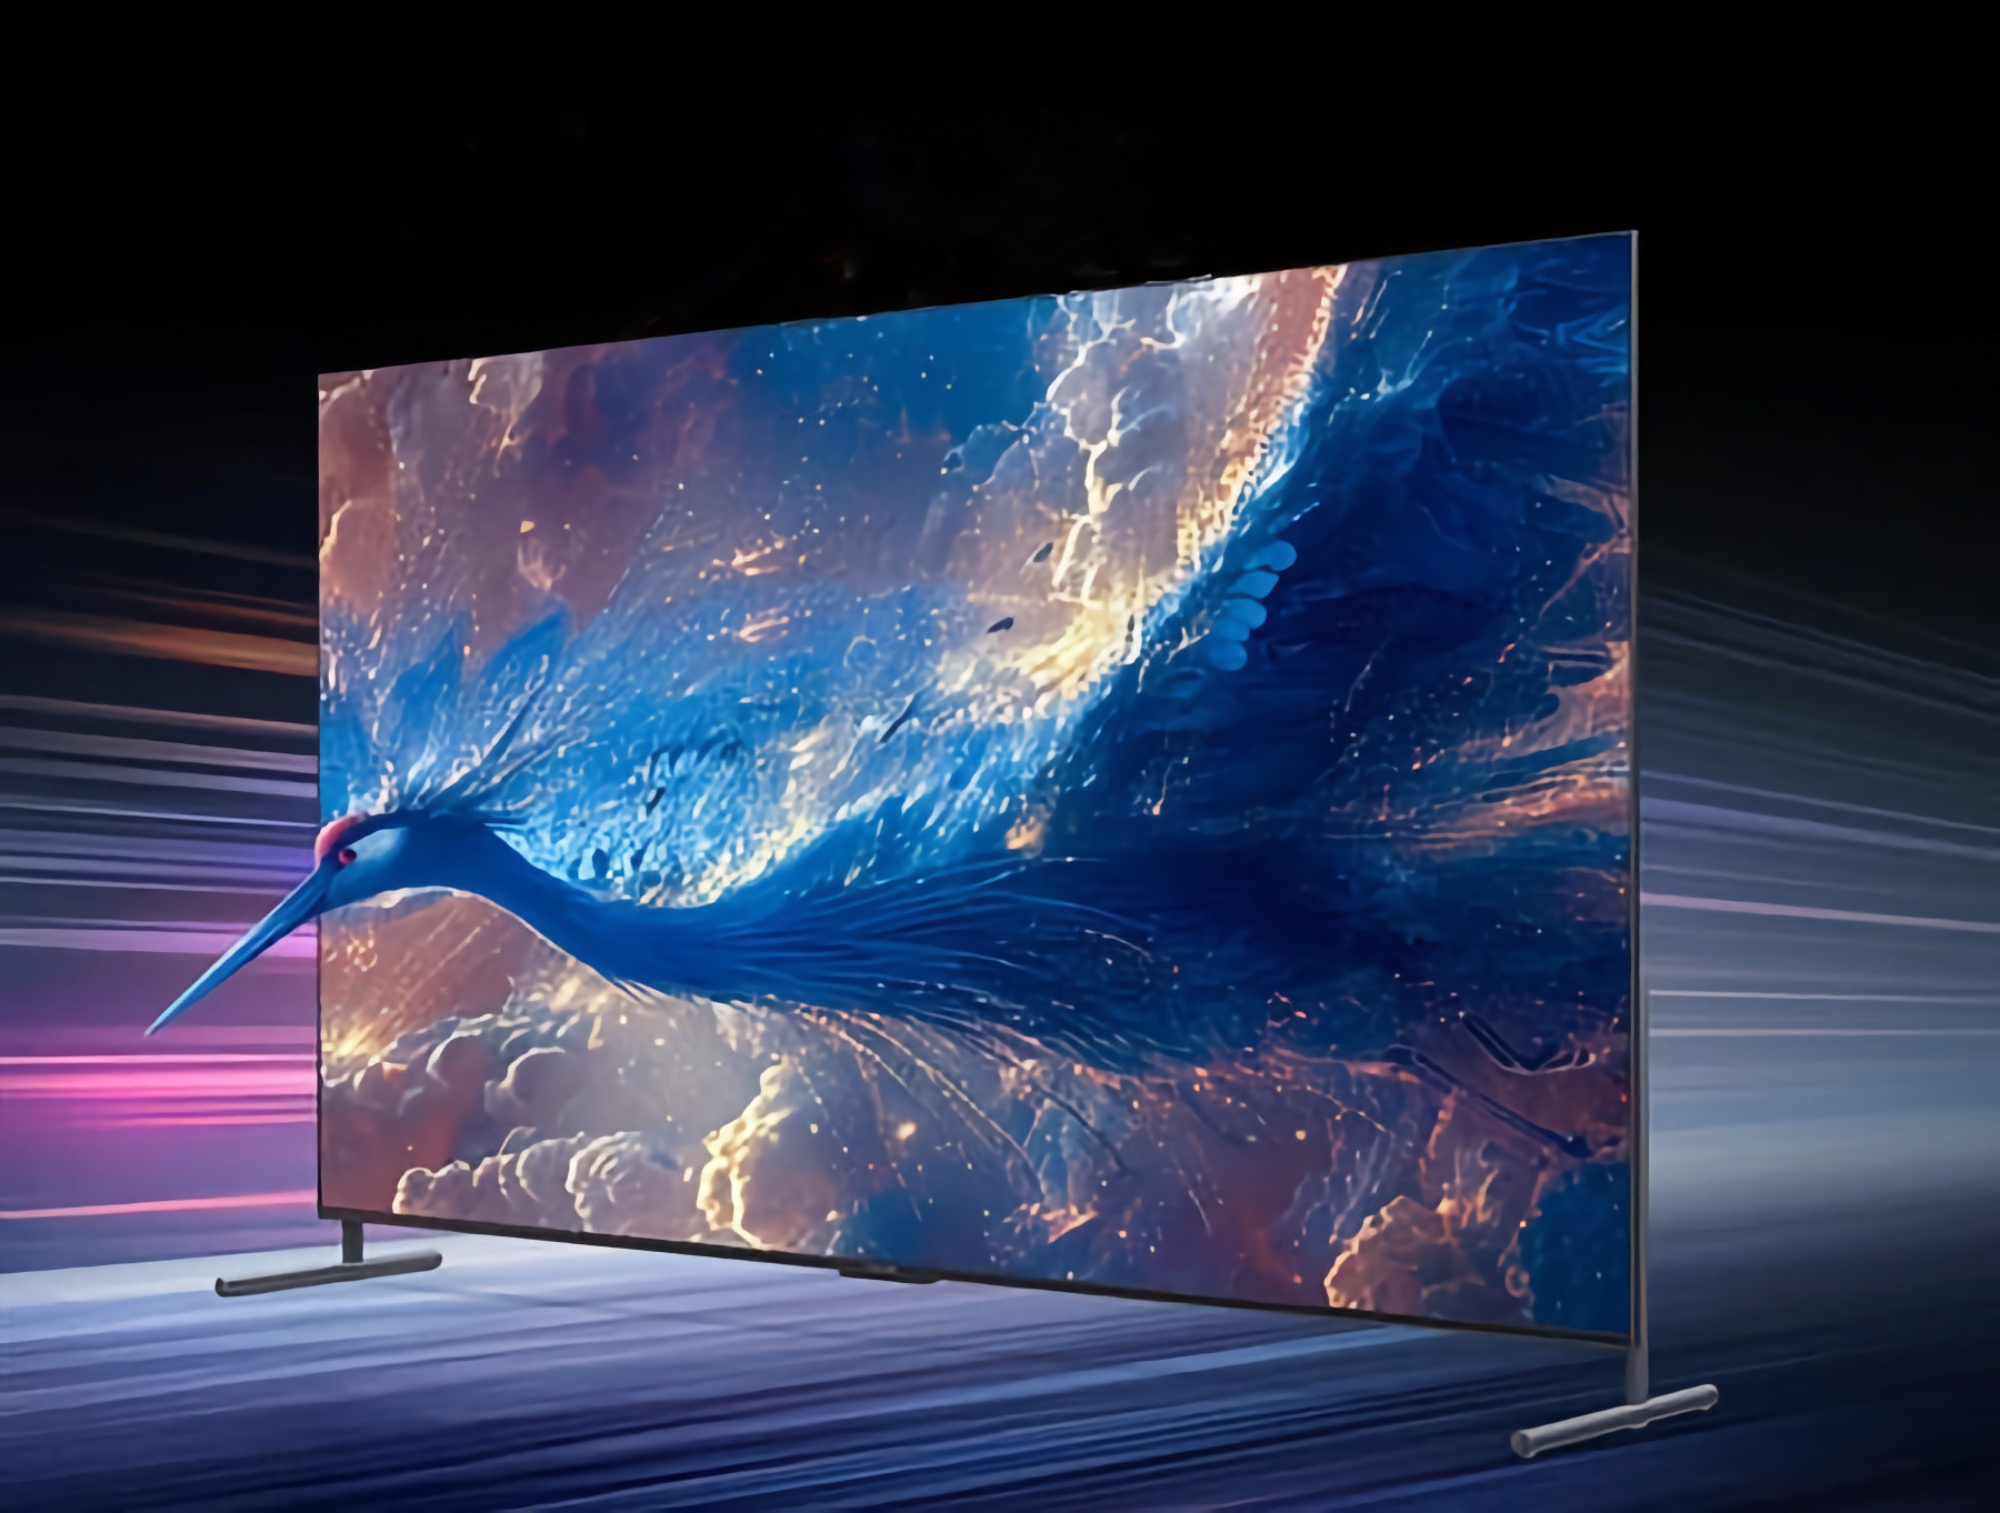 TCL zaprezentowało nowy 100-calowy telewizor z rozdzielczością 4K, częstotliwością odświeżania 144 Hz i 540 strefami podświetlenia